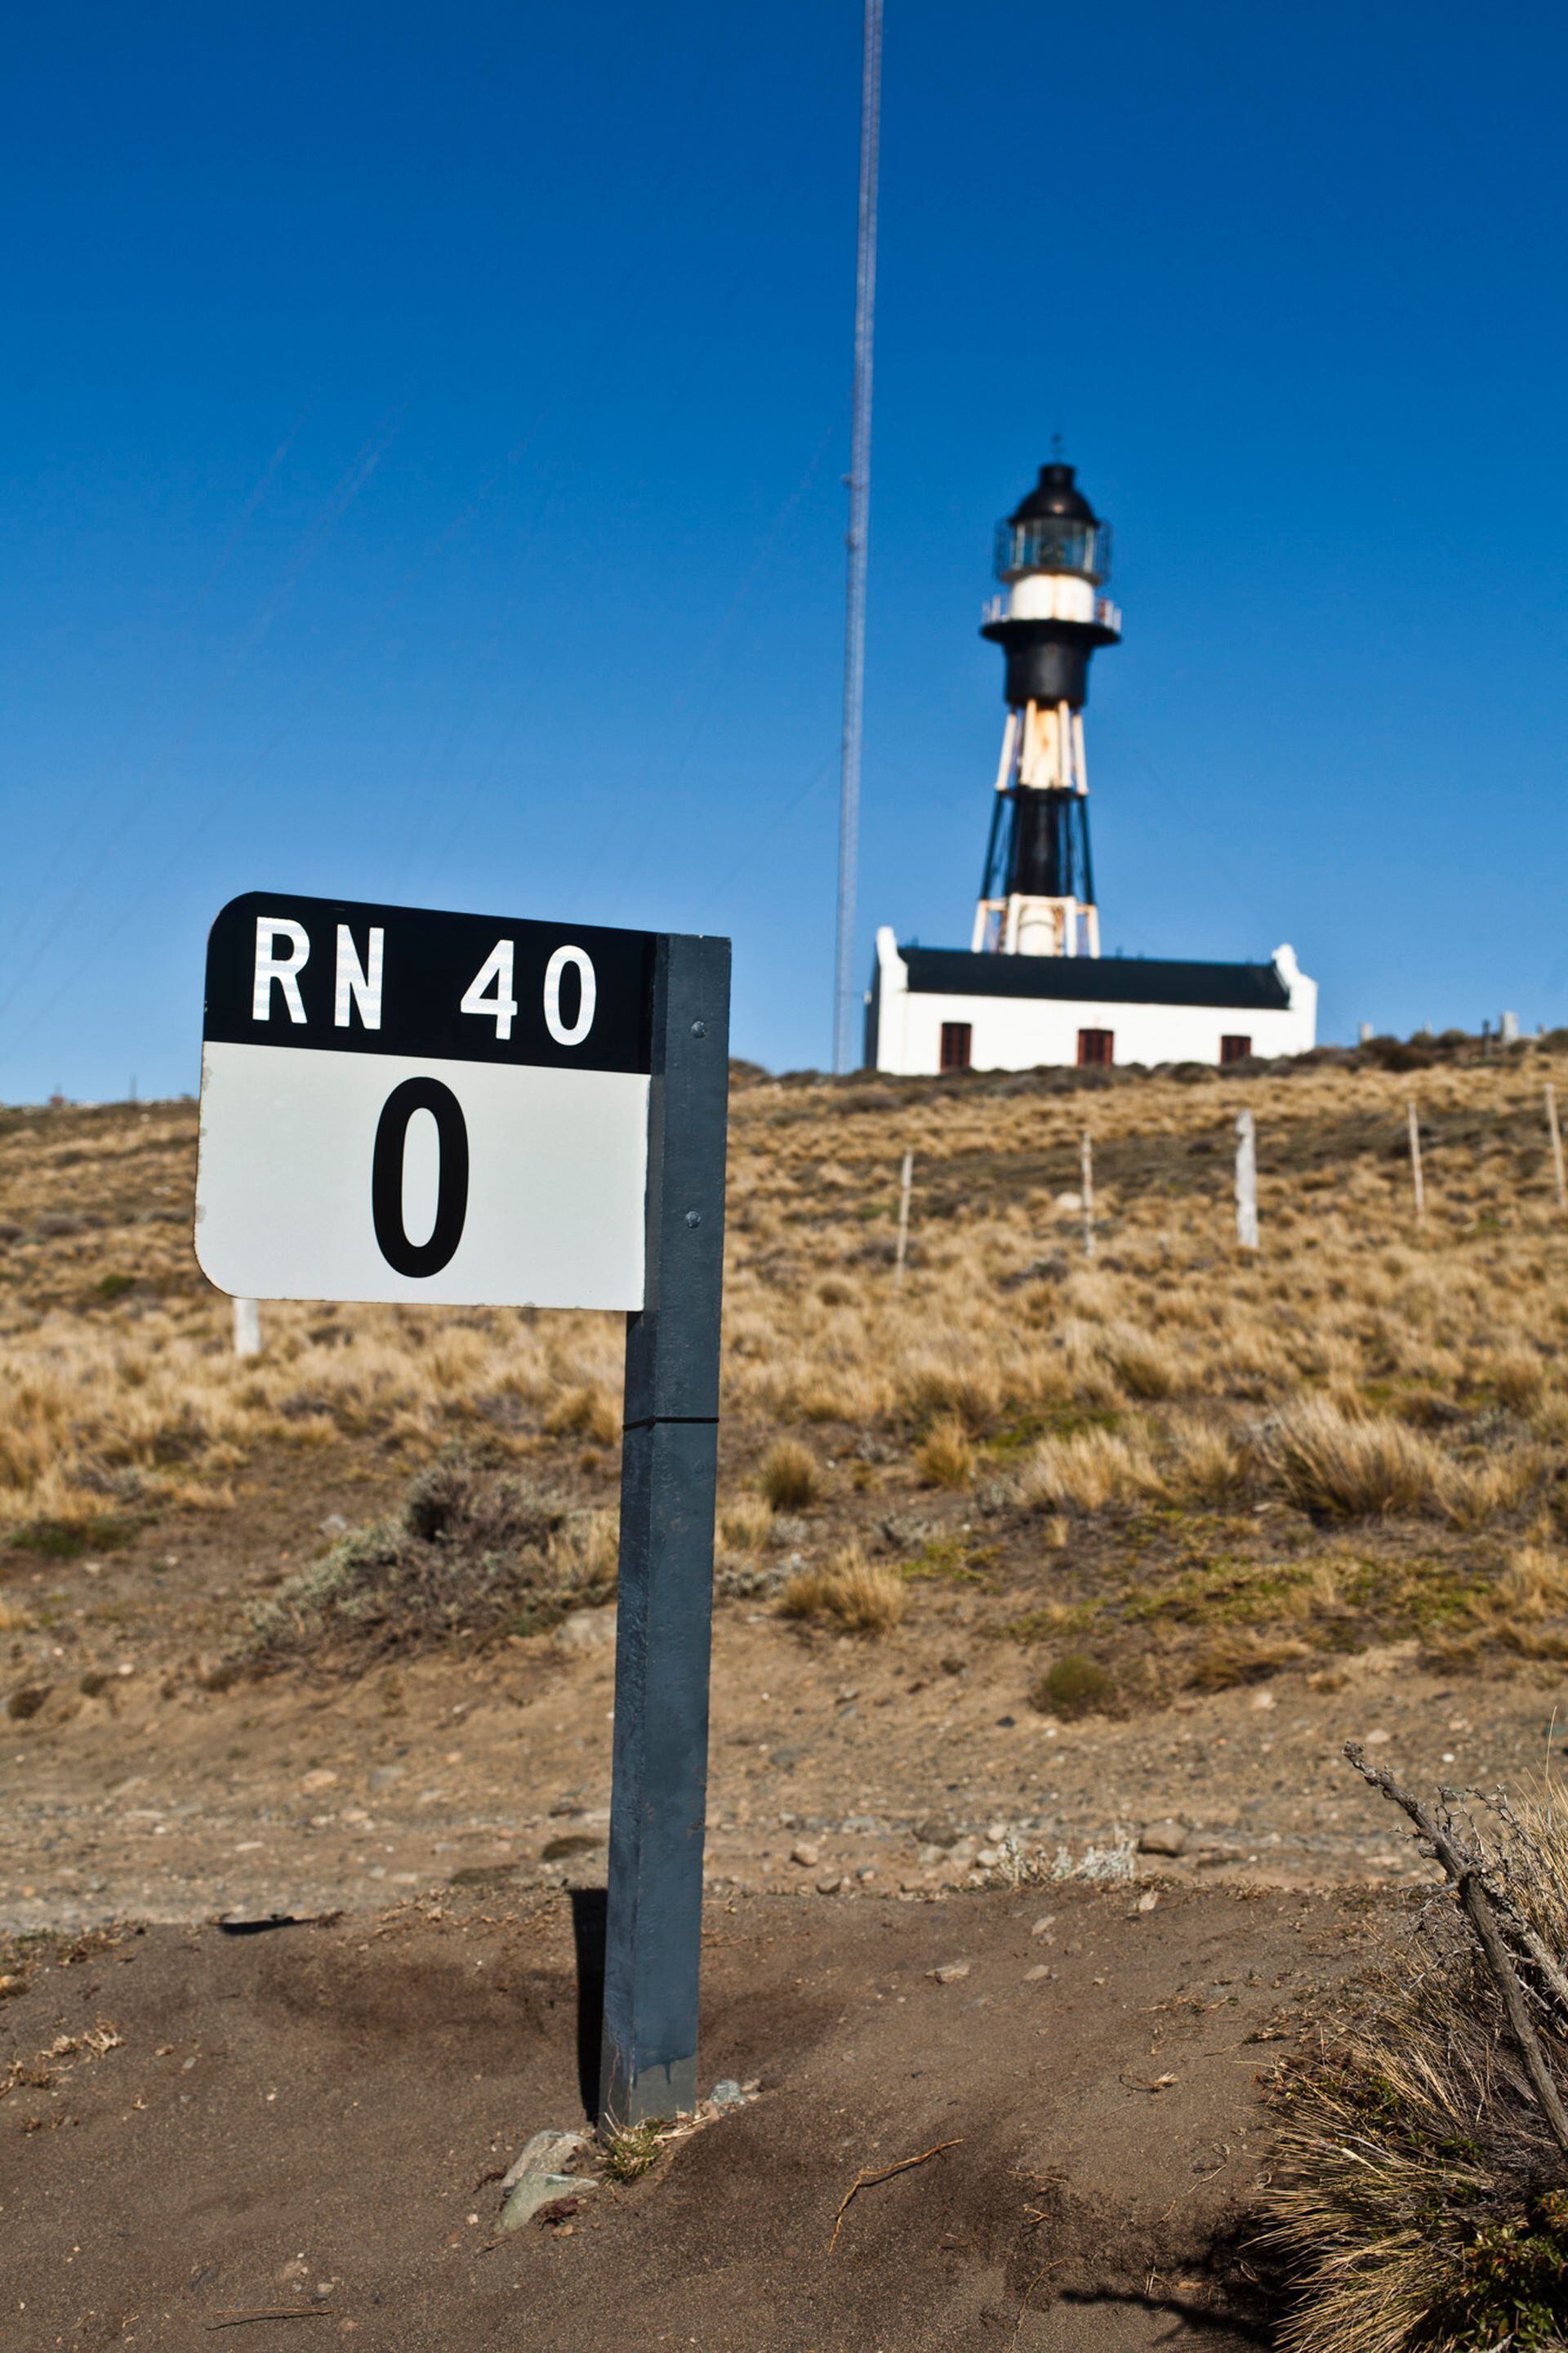 El Faro de Cabo Vírgenes se encuentra al lado del Km 0 del nuevo trazado de la RN 40.